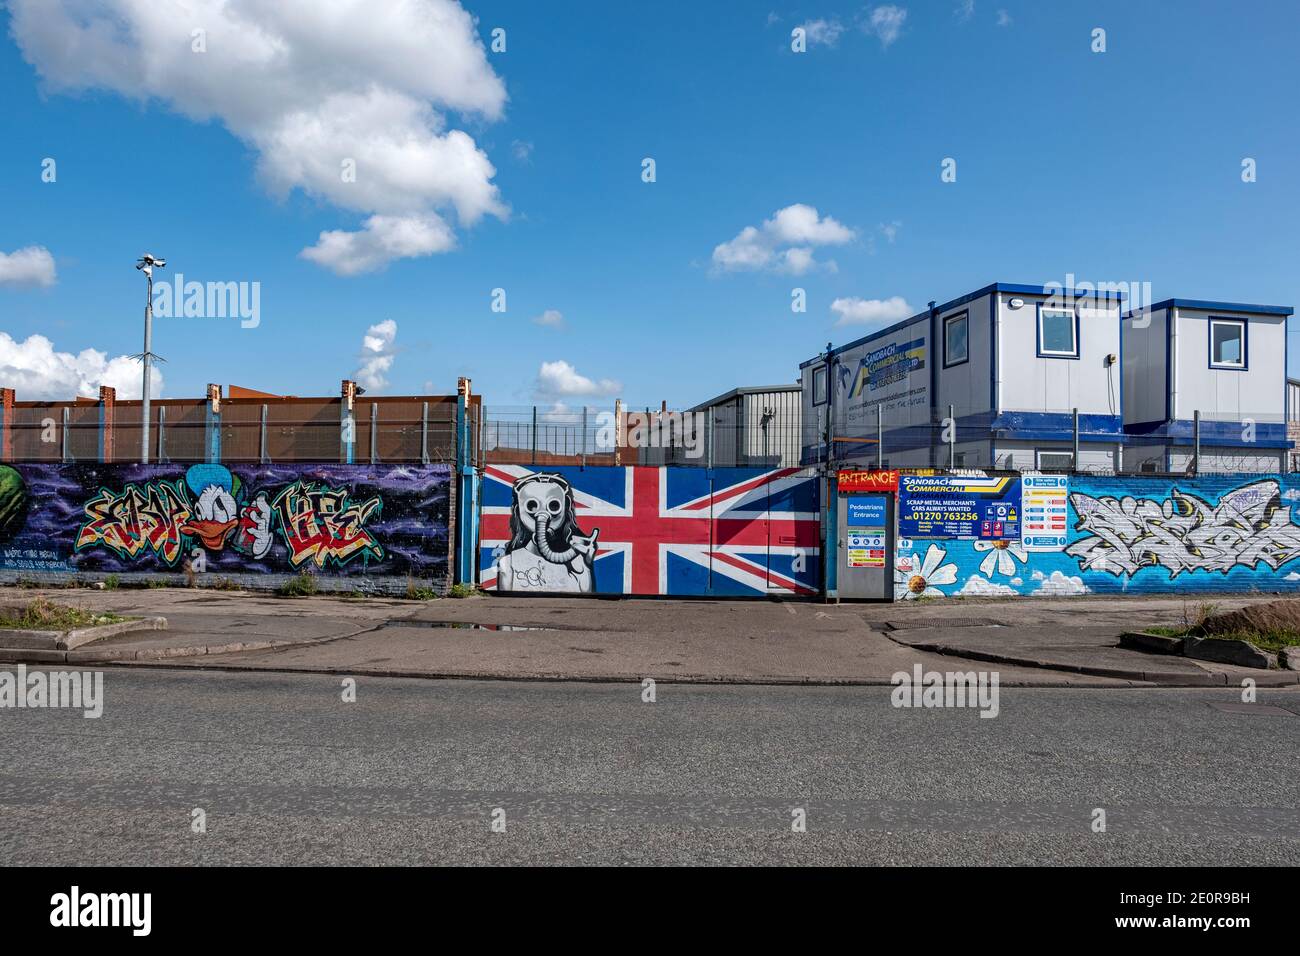 Graffiti an der Außenwand von Sandbach Commercial Dismantlers, Schrottmetallhändler Sandbach Elworth Cheshire UK Stockfoto